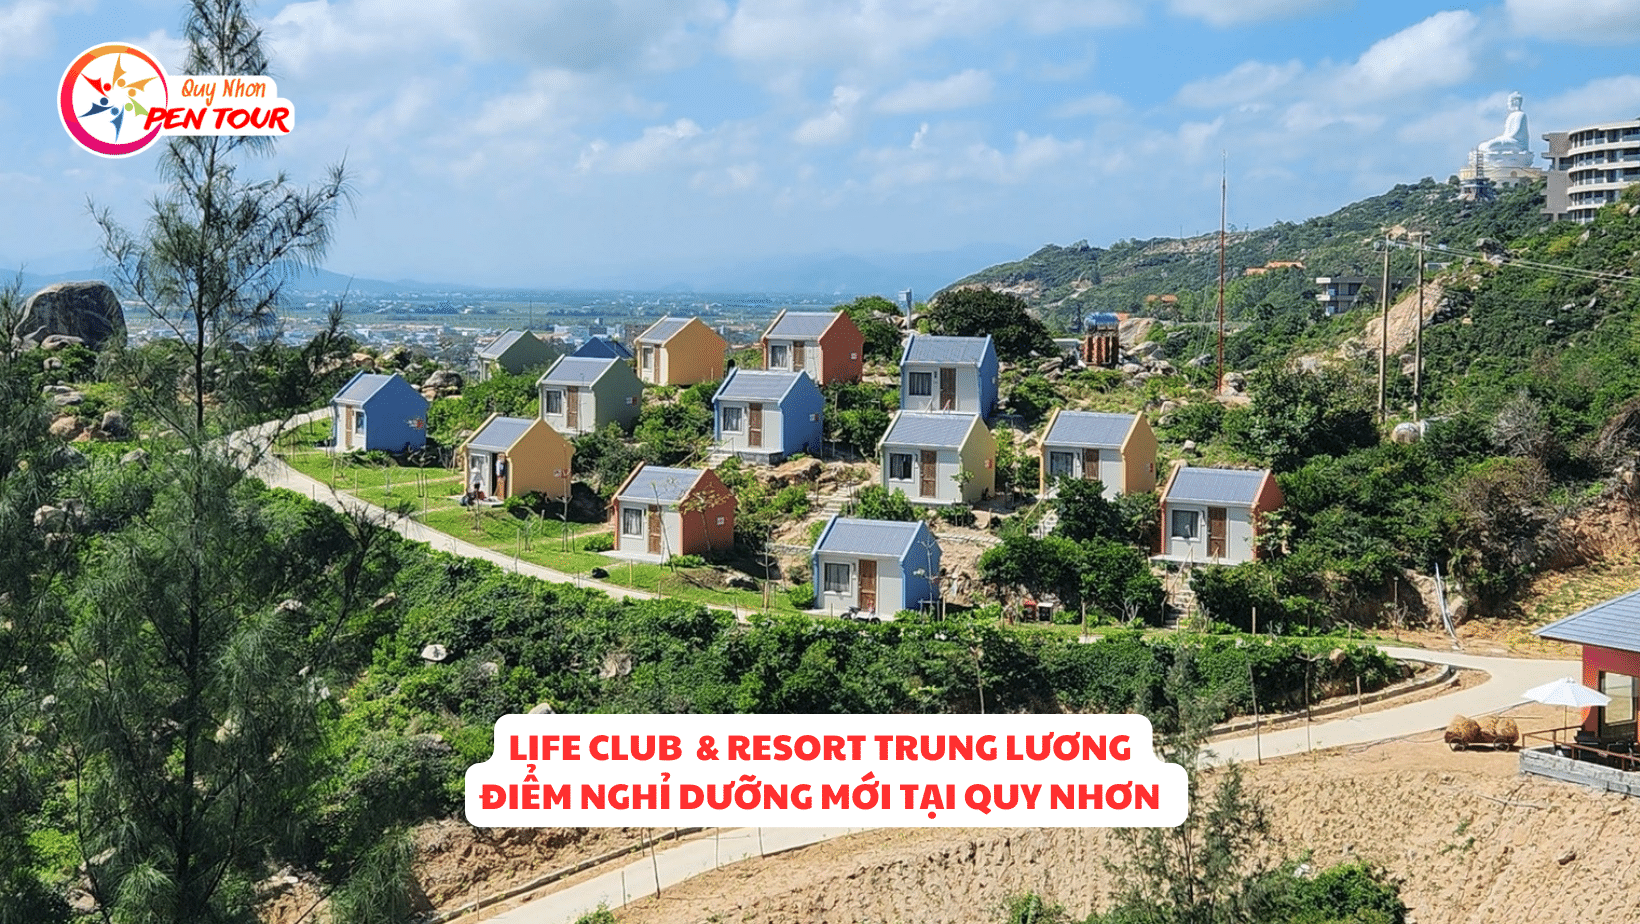 Life Club & Resort Trung Lương